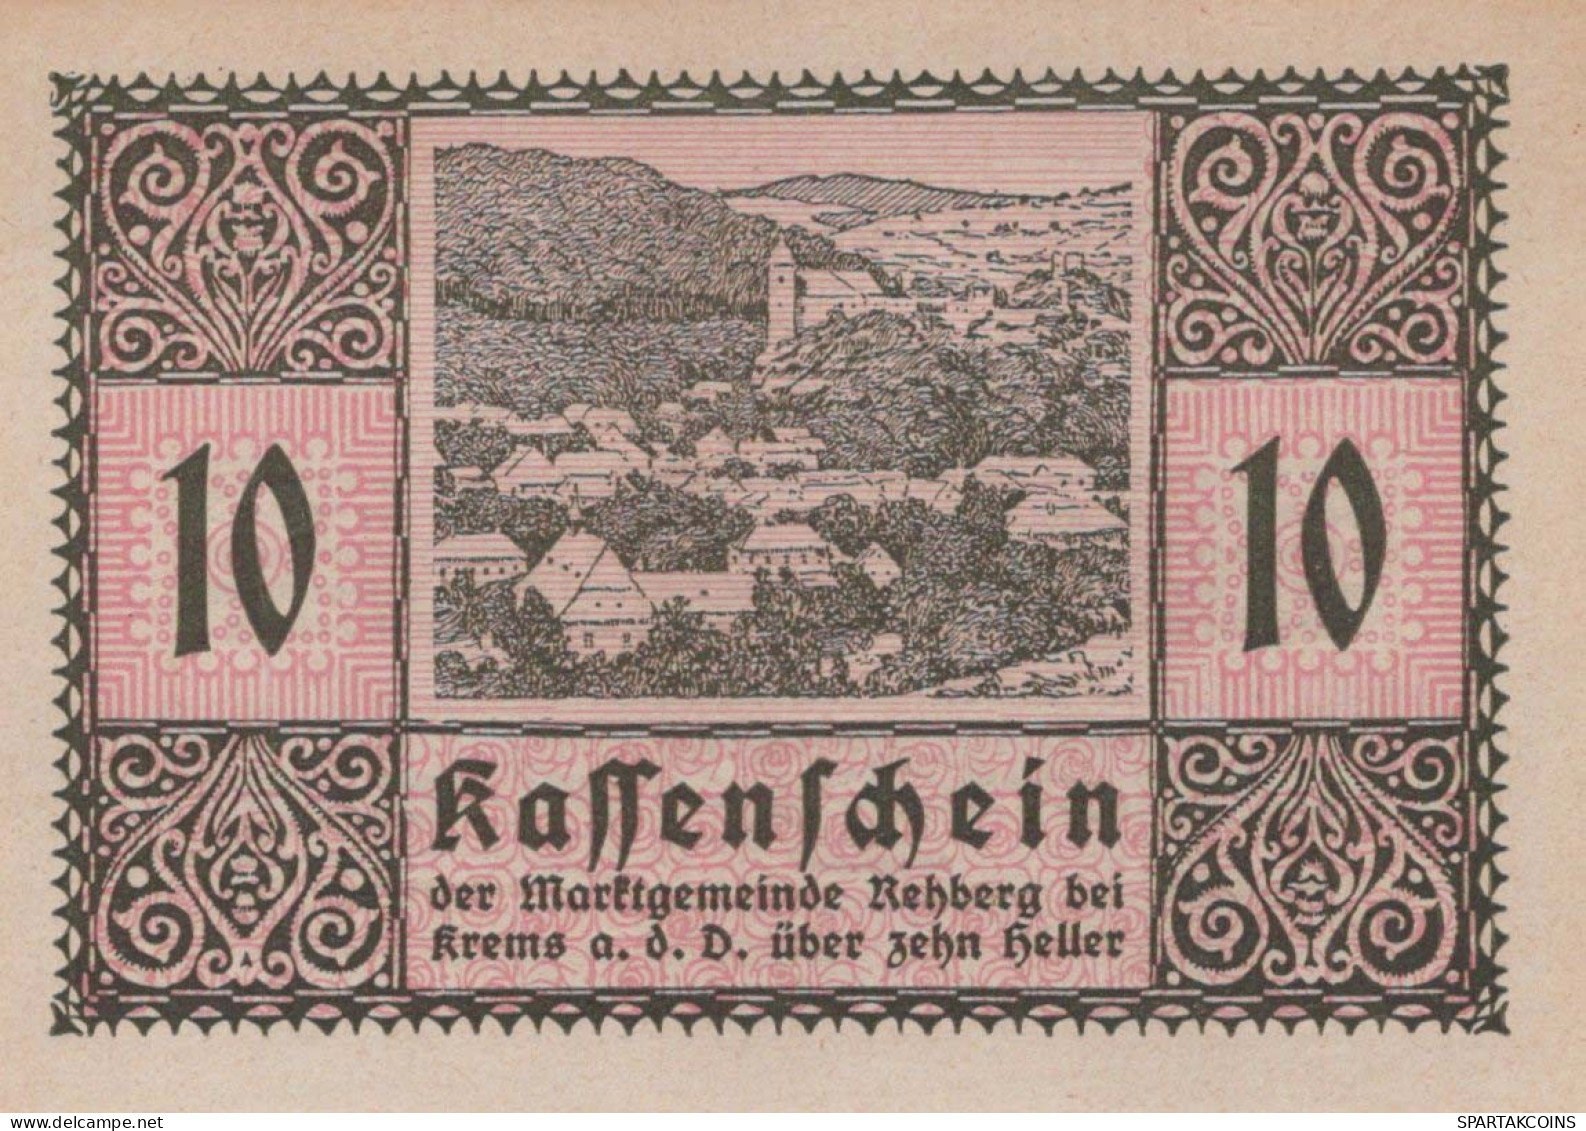 10 HELLER 1920 Stadt REHBERG BEI KREMS AN DER DONAU Niedrigeren Österreich Notgeld Papiergeld Banknote #PG799 - [11] Emissions Locales